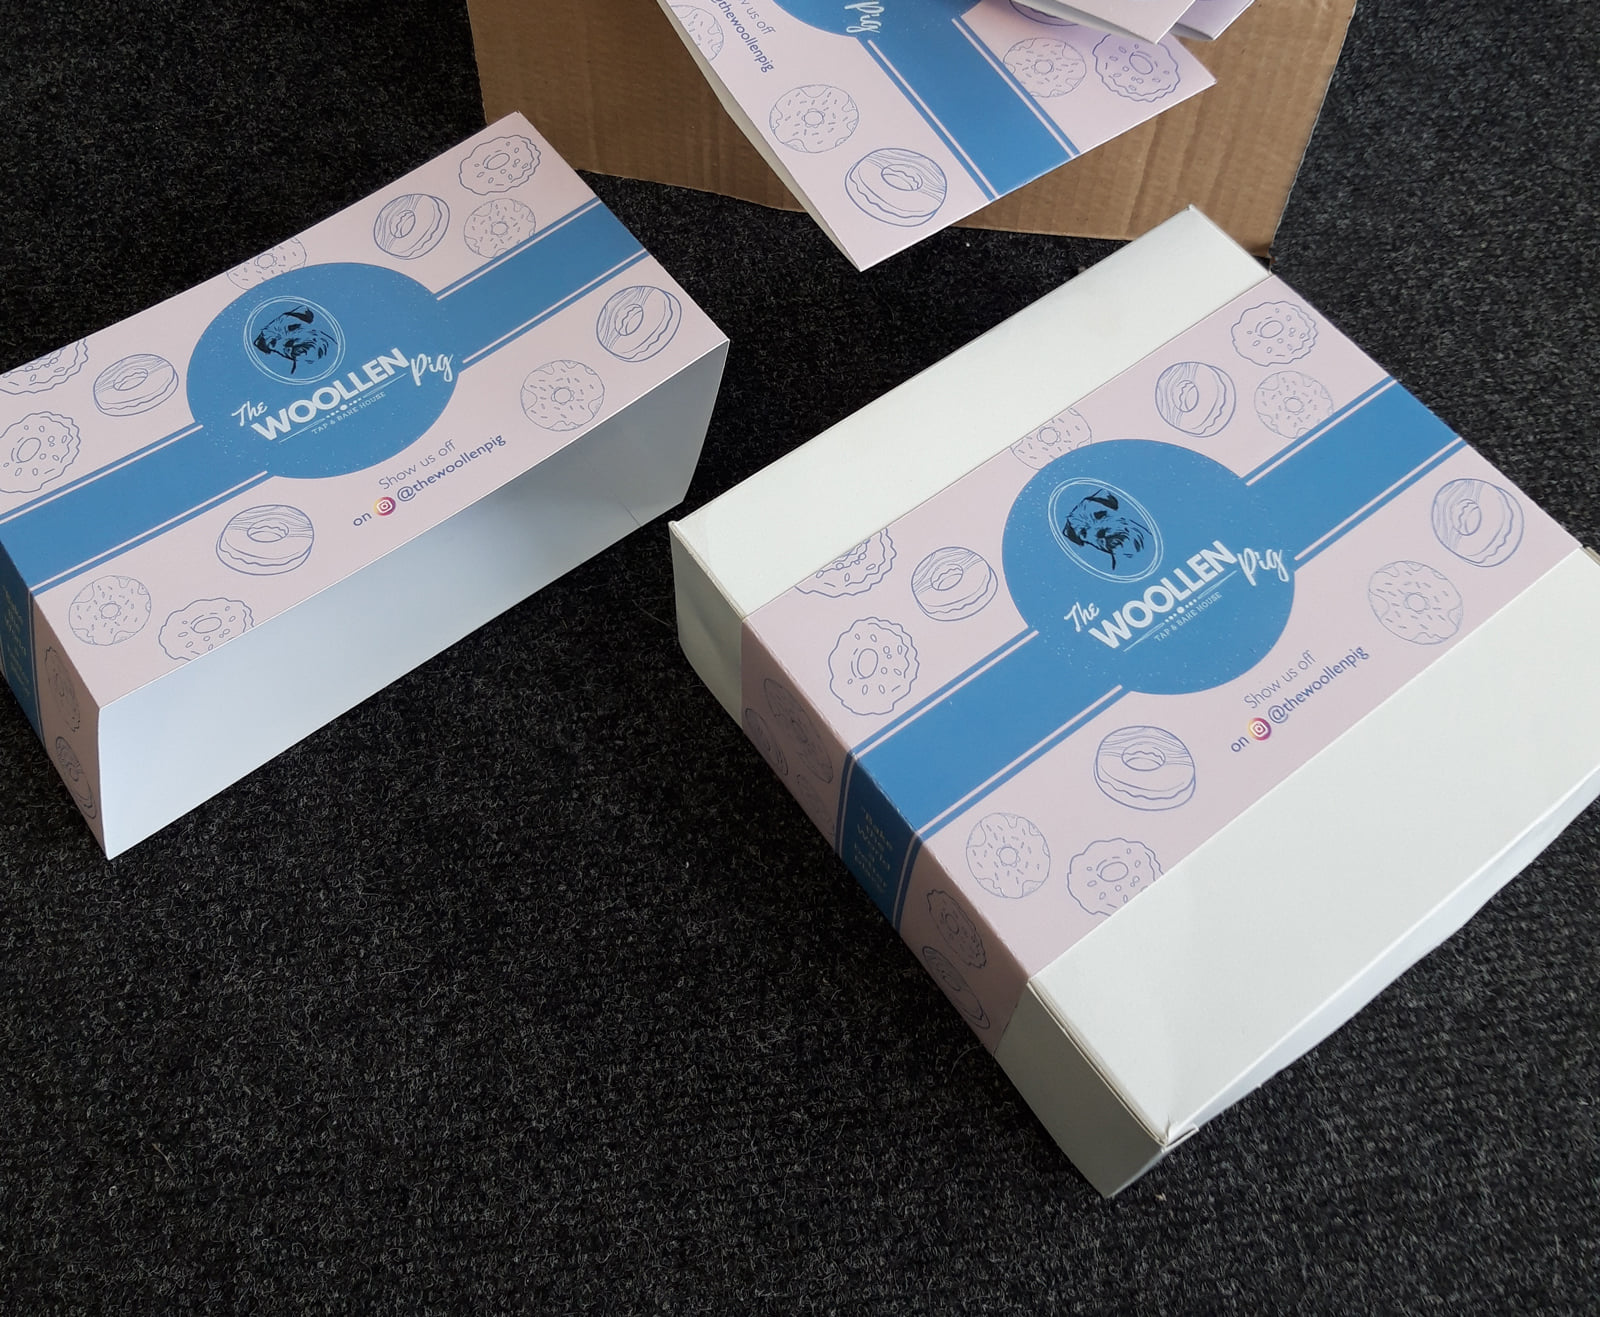 woollen pig cake box packaging